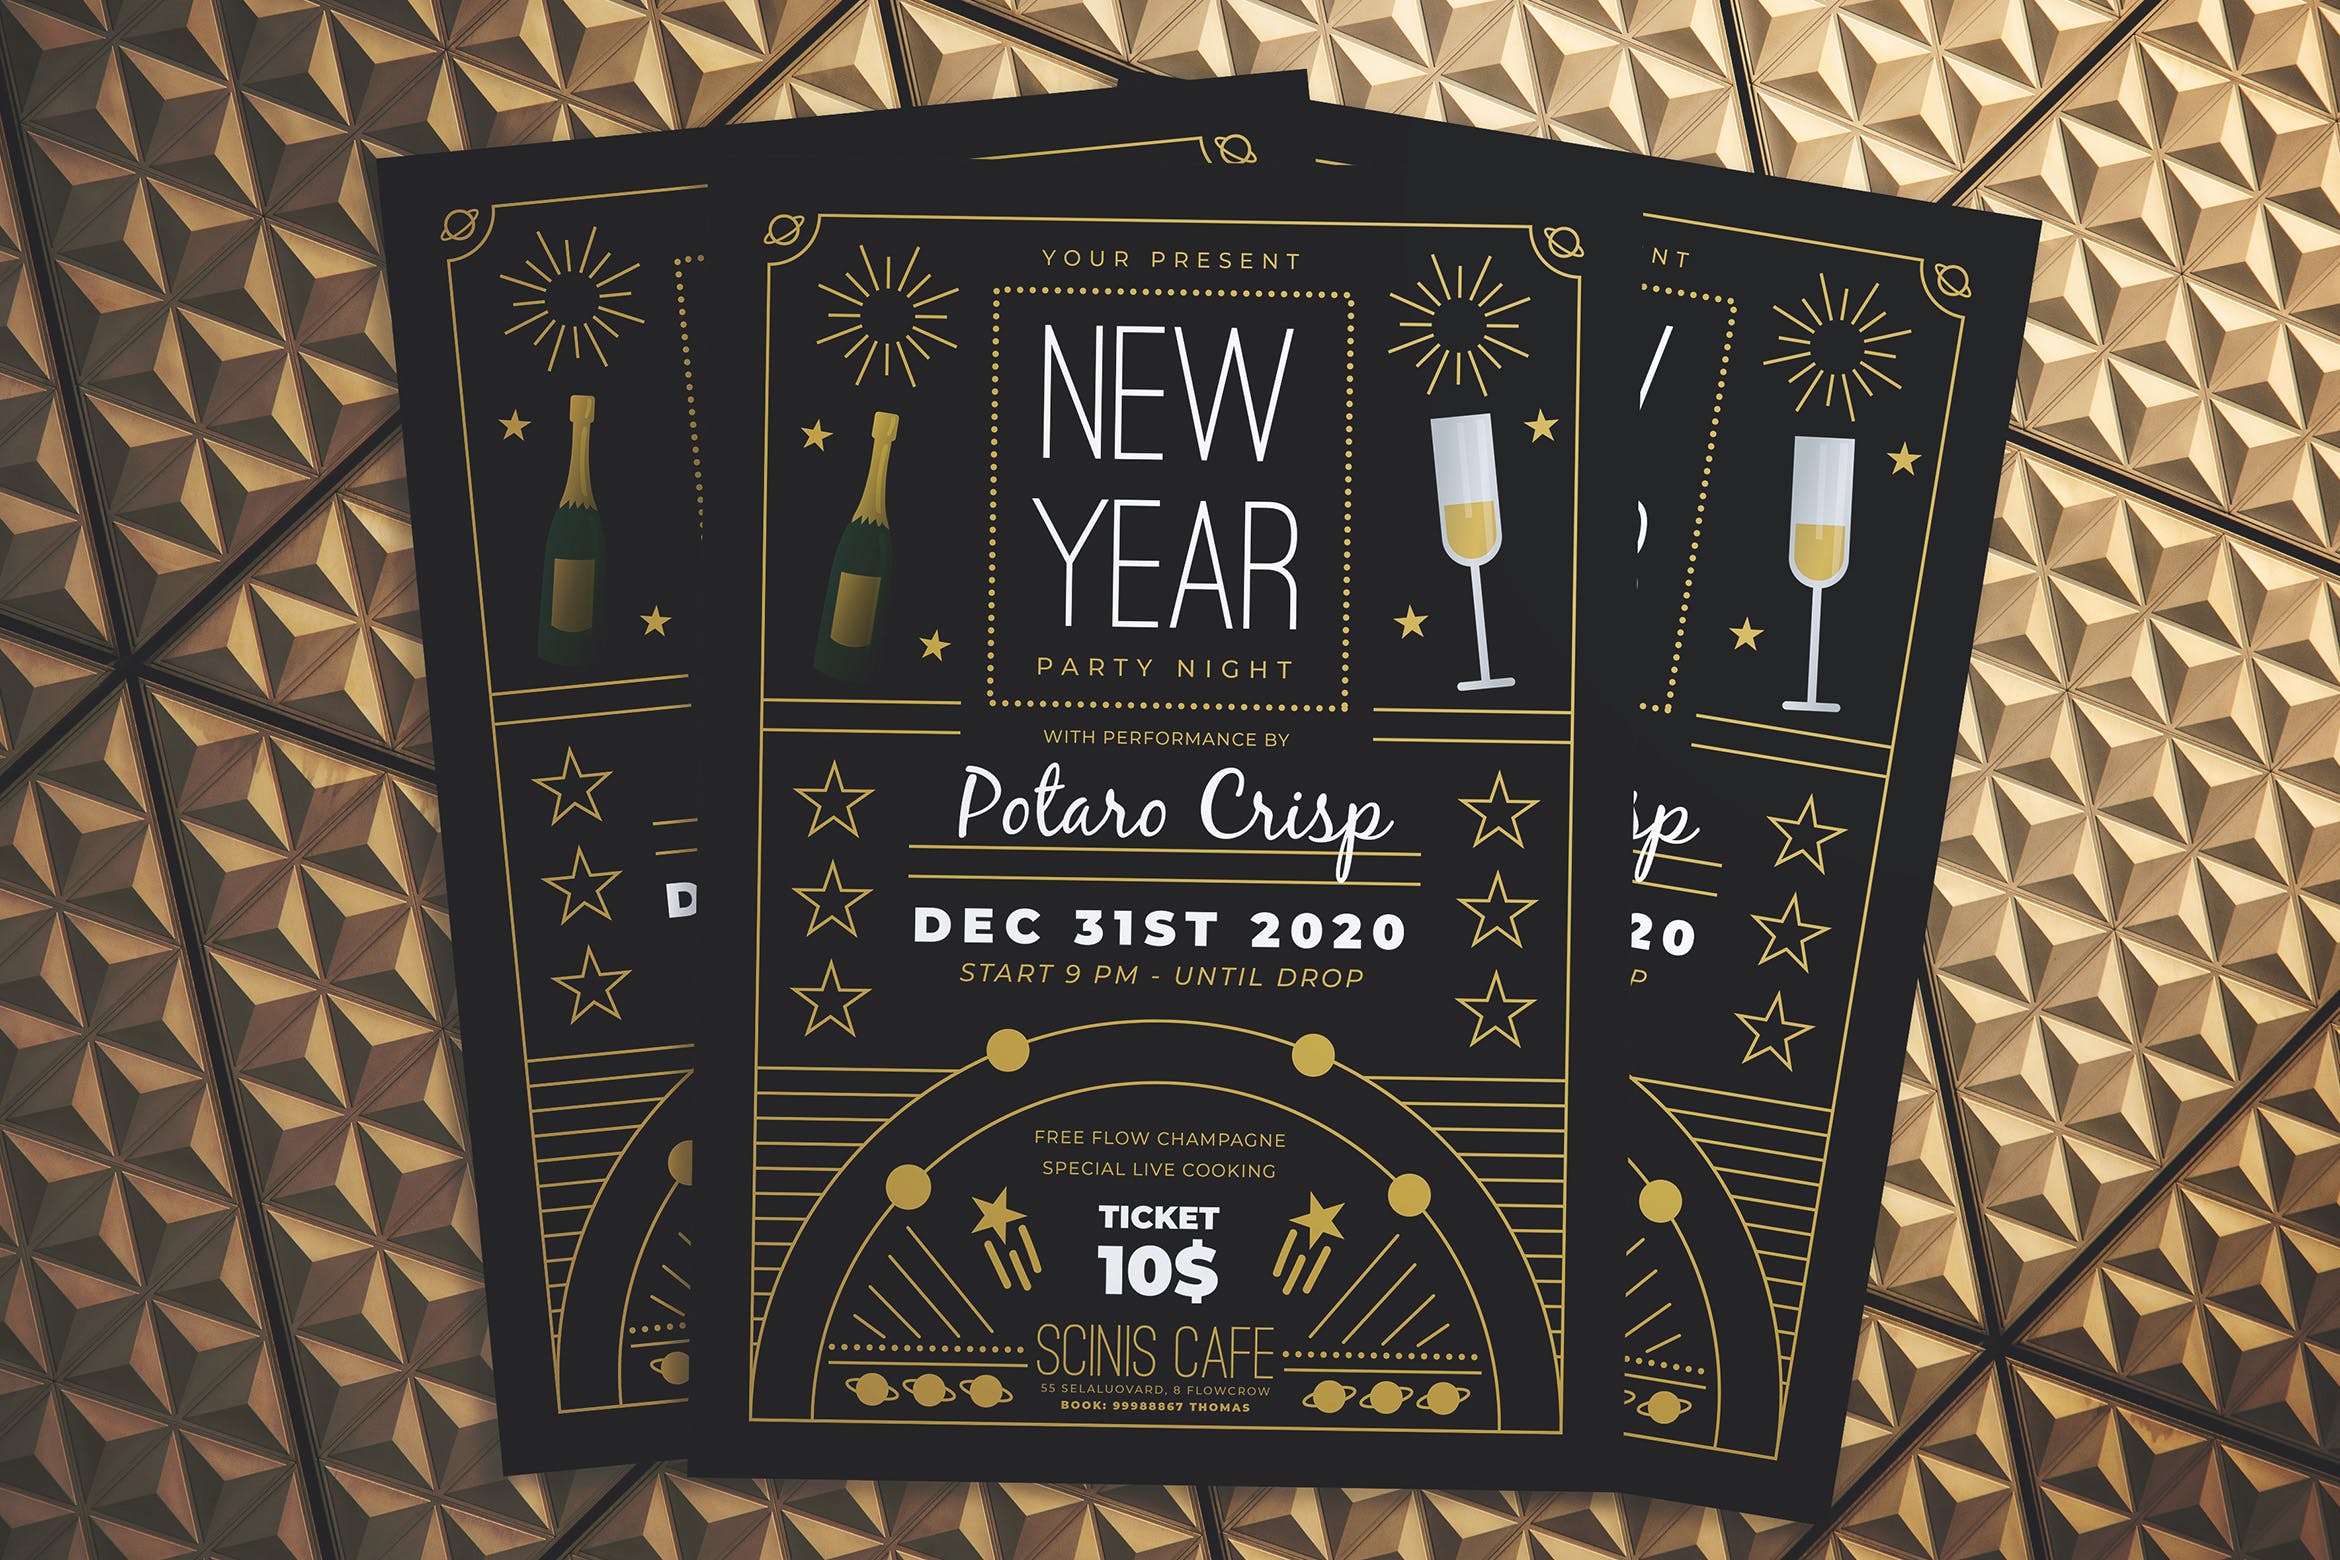 复古设计风格新年晚会海报传单16设计网精选PSD模板 New Year Party Night Flyer插图